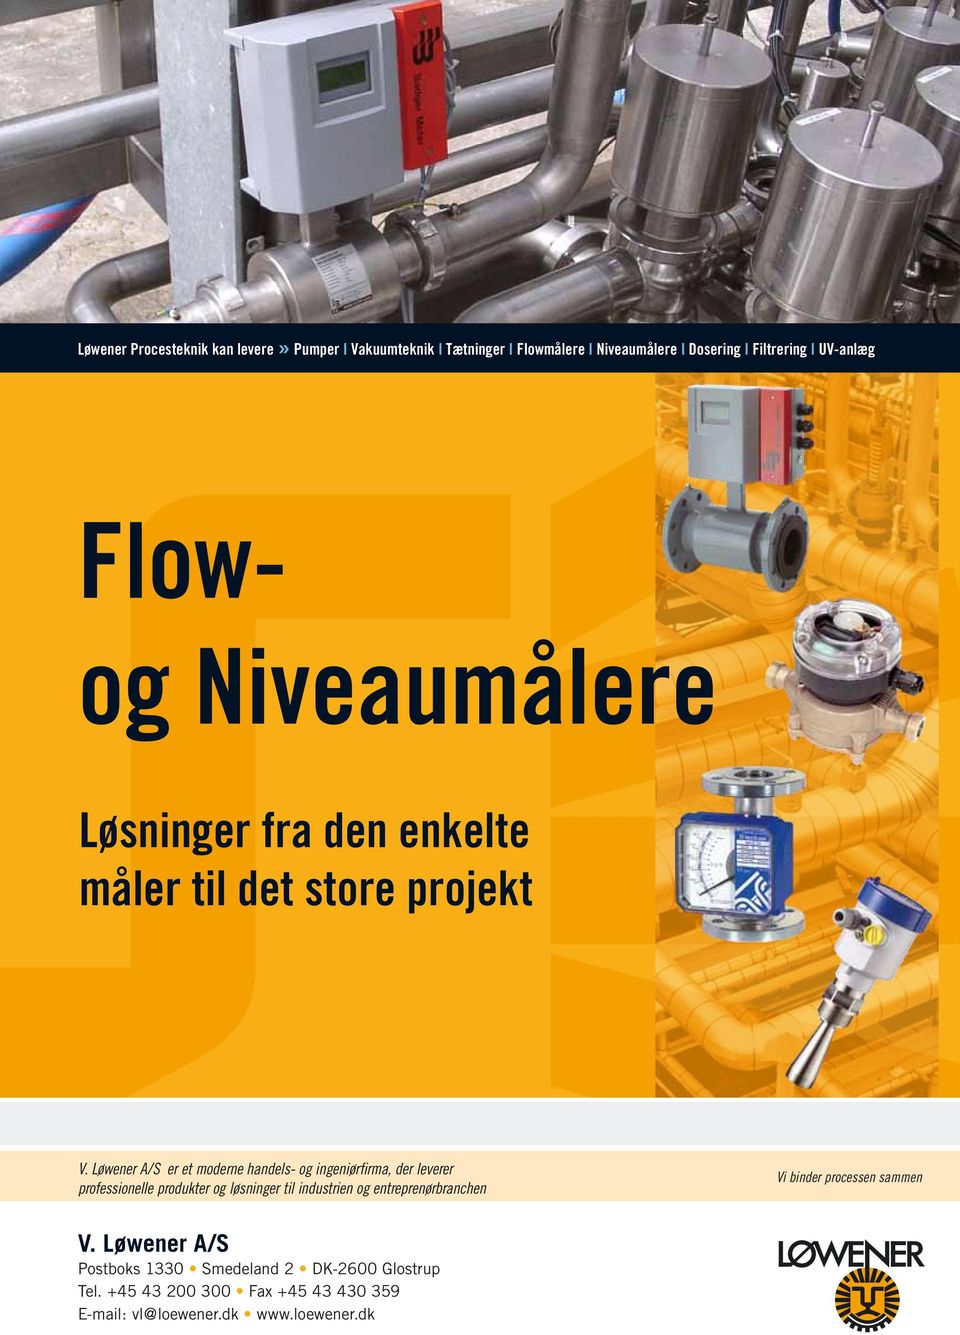 Løwener A/S er et moderne handels- og ingeniørfirma, der leverer professionelle produkter og løsninger til industrien og